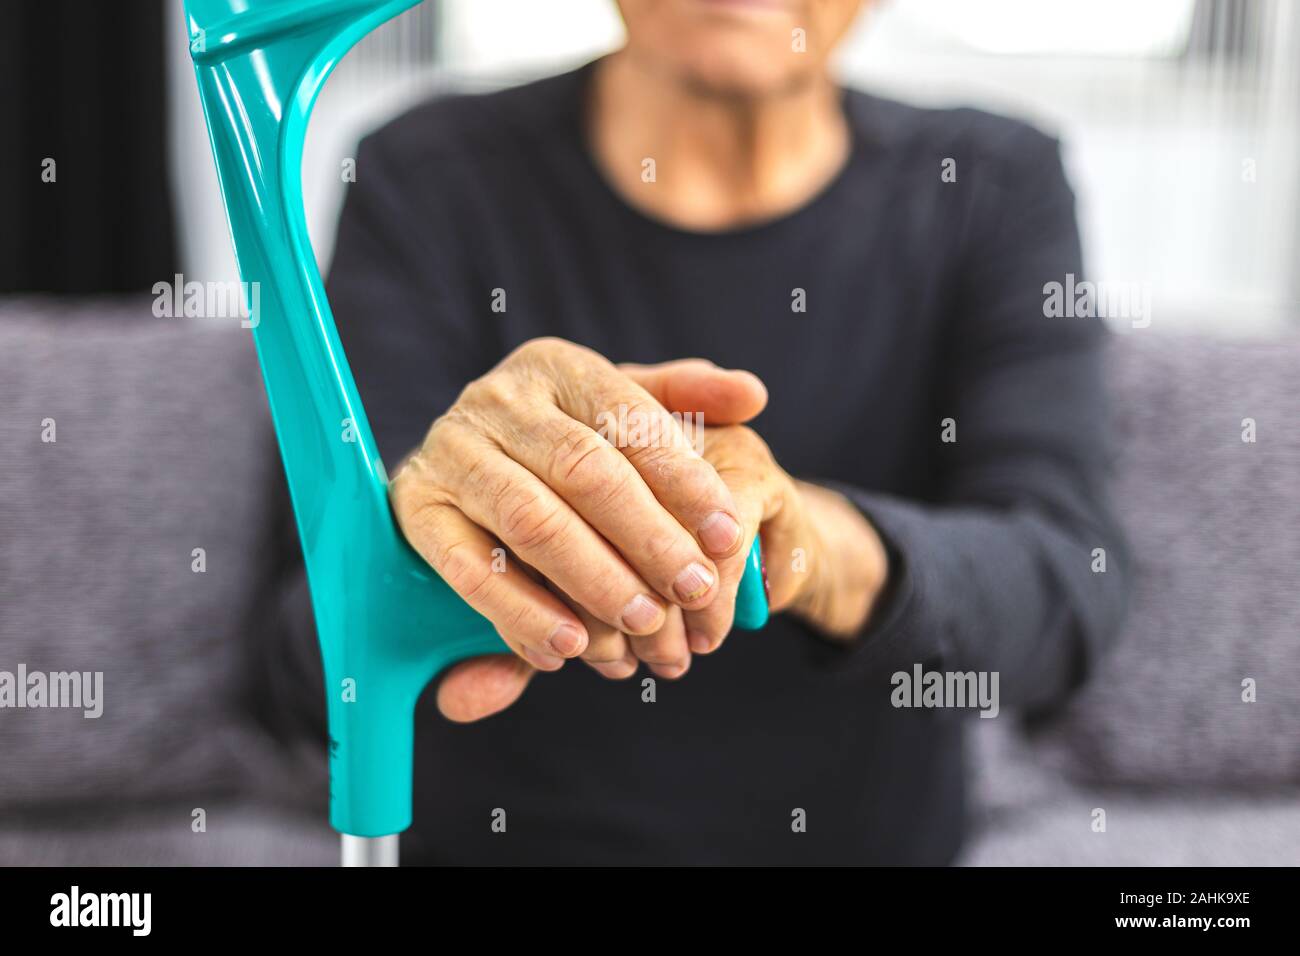 Ältere Person stehen mit den Händen ruht auf medizinische Spazierstock. Konzept der Person mit Bewegungslosigkeit, Gelenke, Rheuma problem. Stockfoto